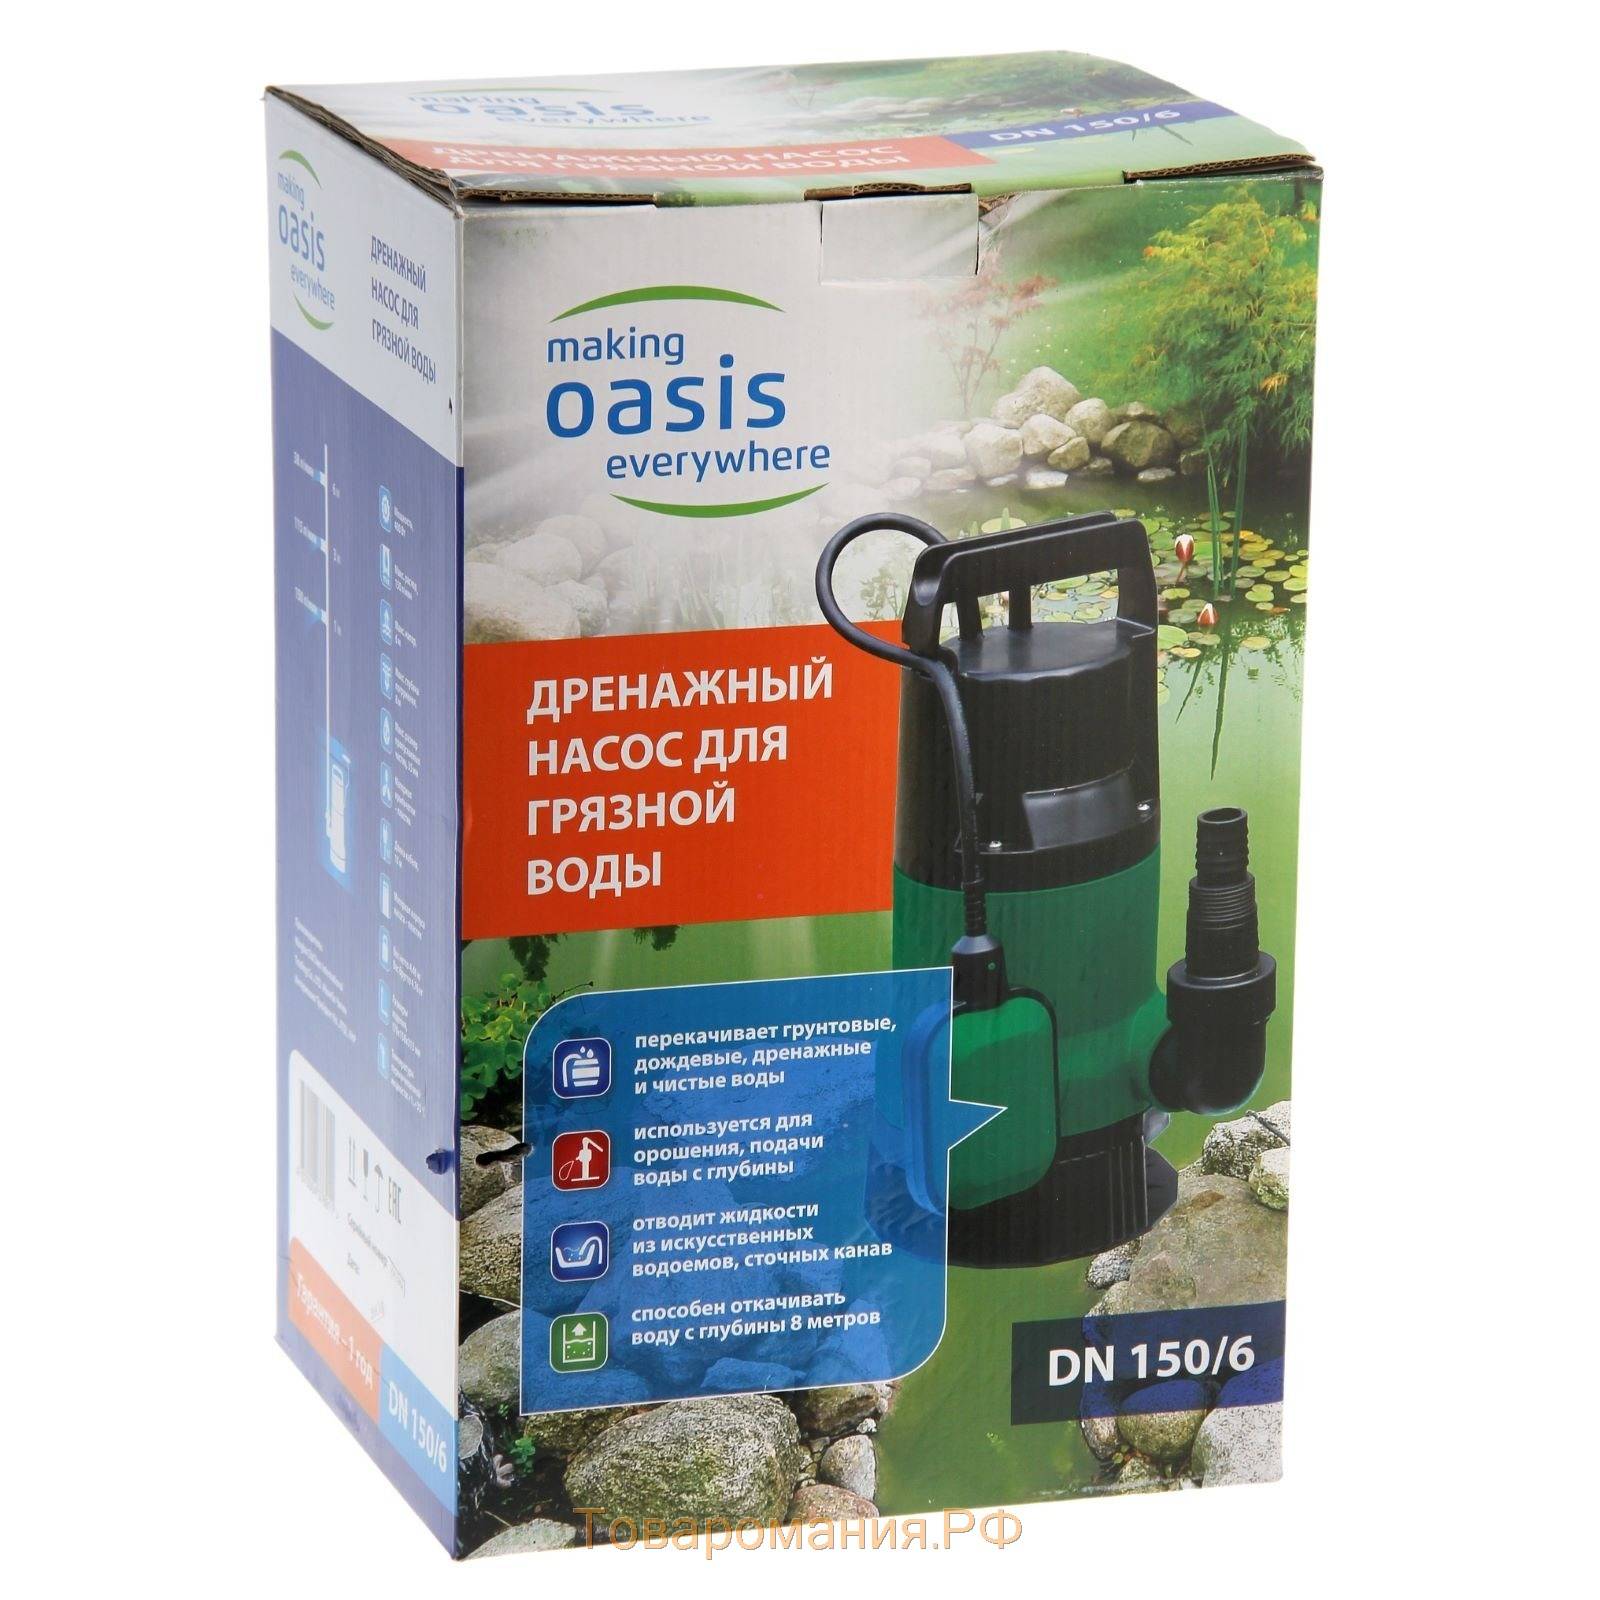 Официальный сайт бренда oasis. оборудование для отопления и водоснабжения, кухонная и климатическая техника.